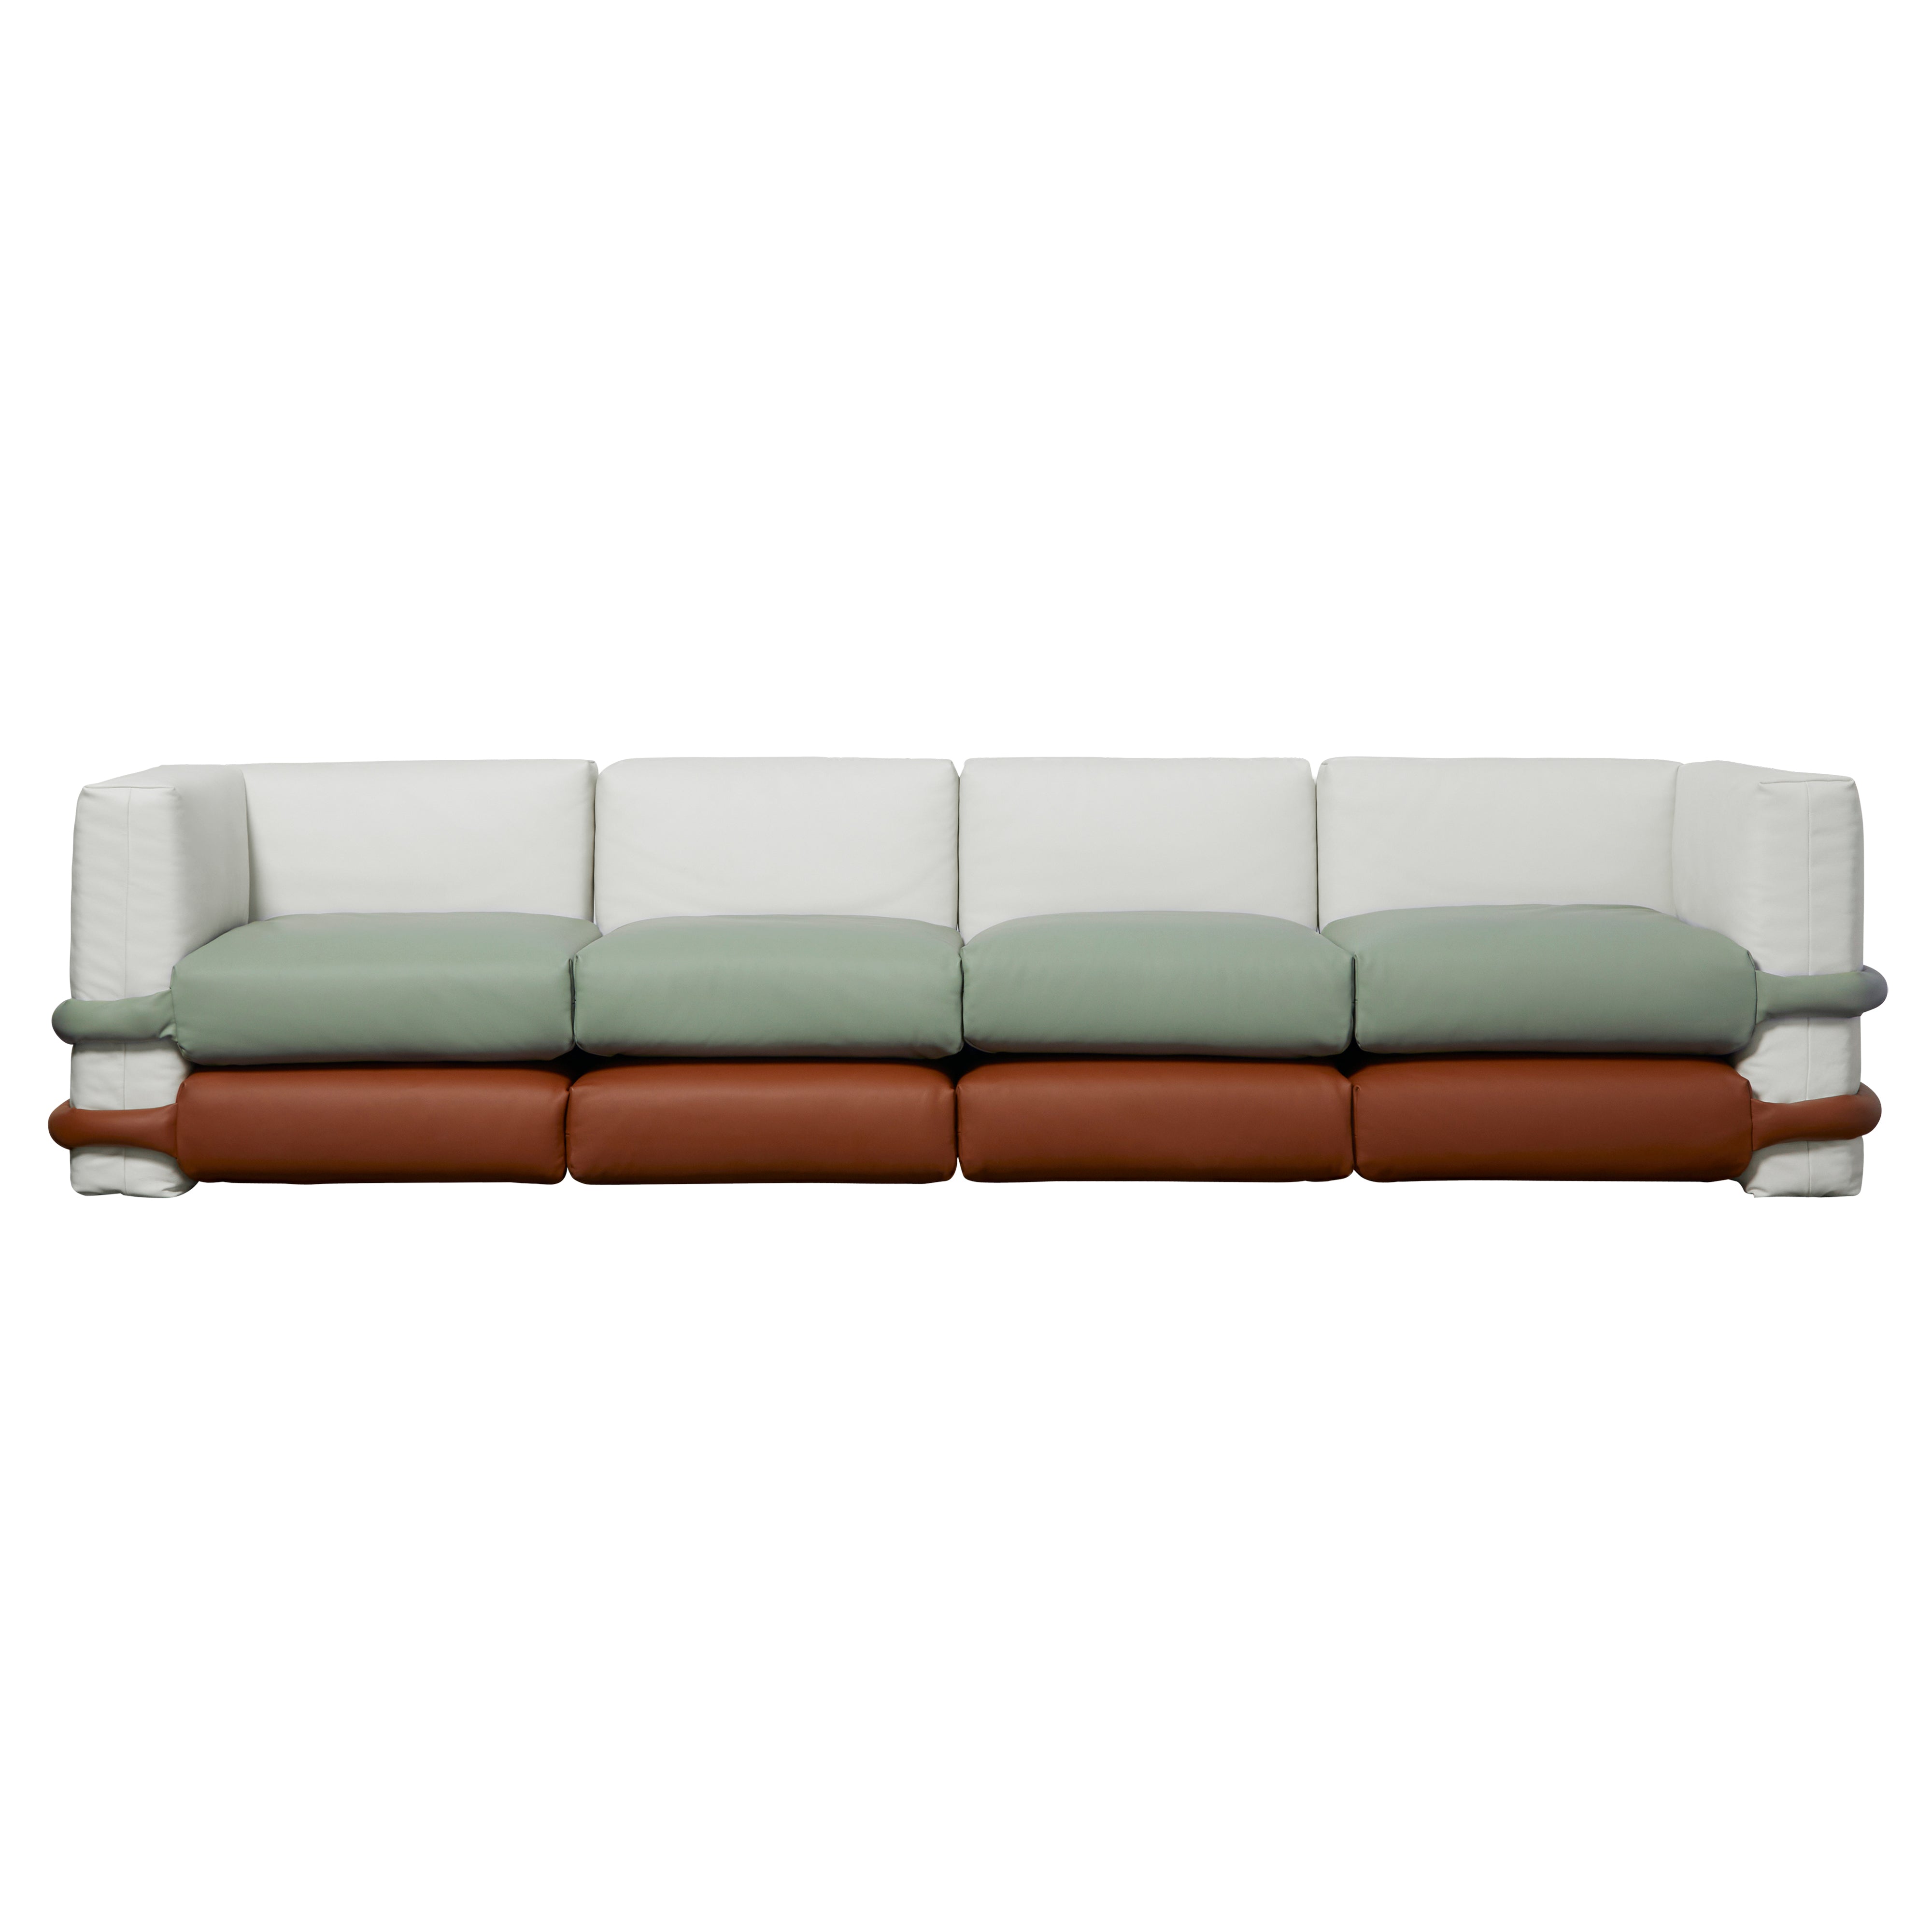 Pillow Modular Sofa